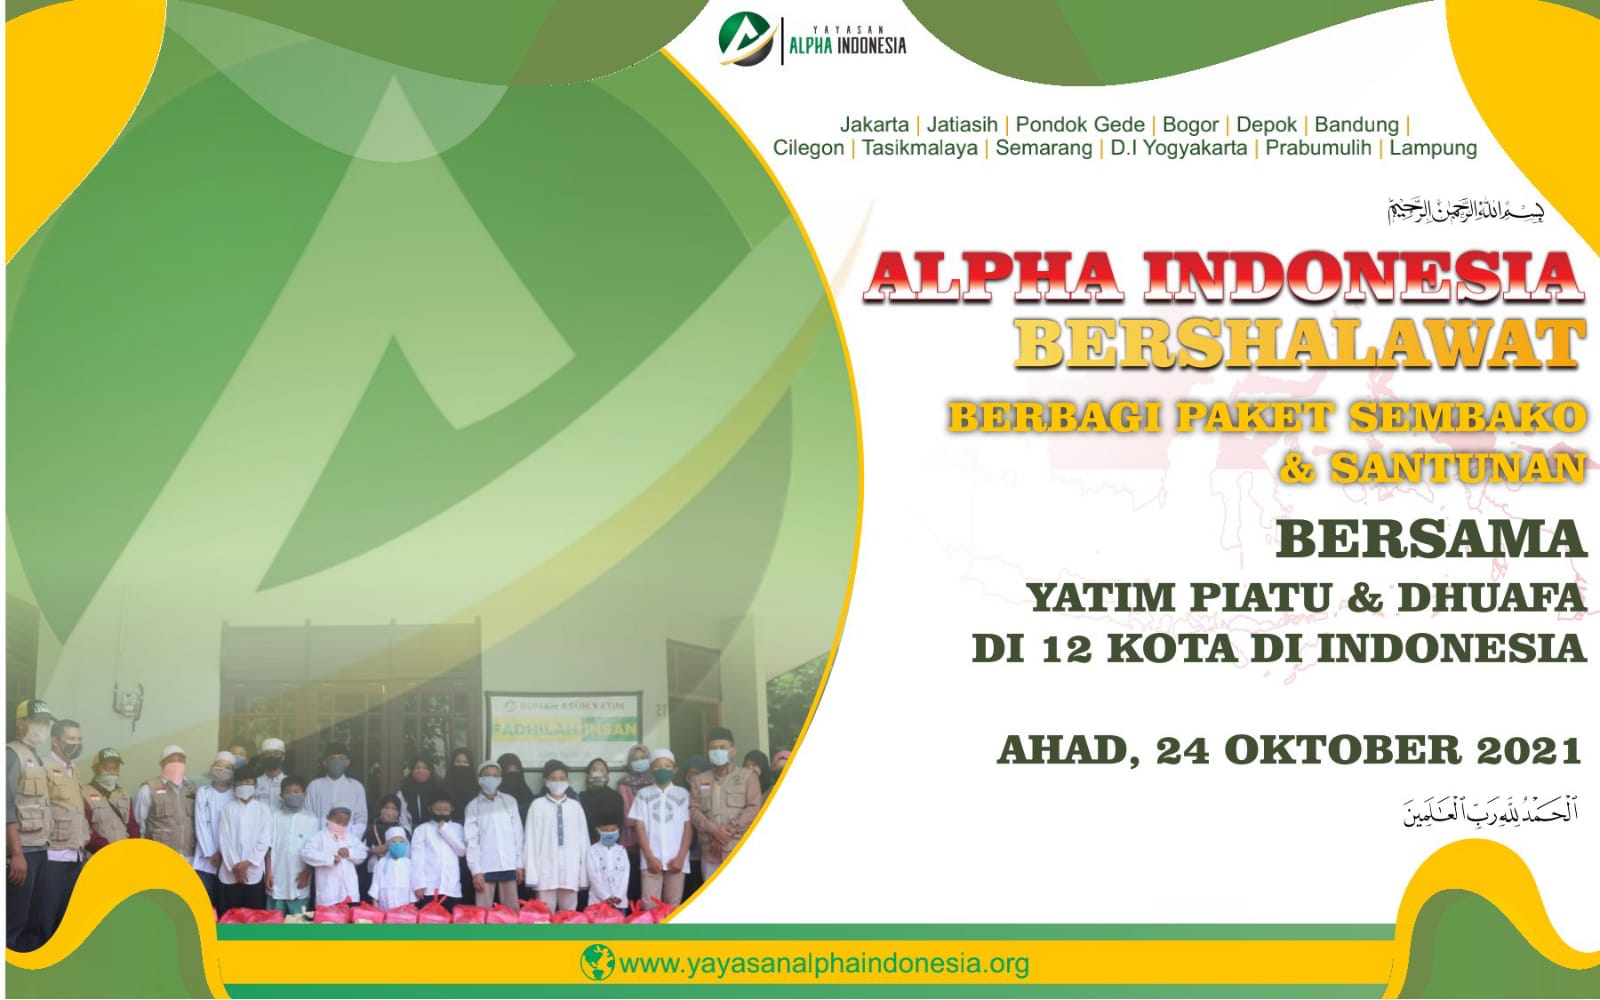 10 Hari LAgi Event Akbar Alpha Indonesia Bersholawat Santunan 1000 Yatim Dhuafa